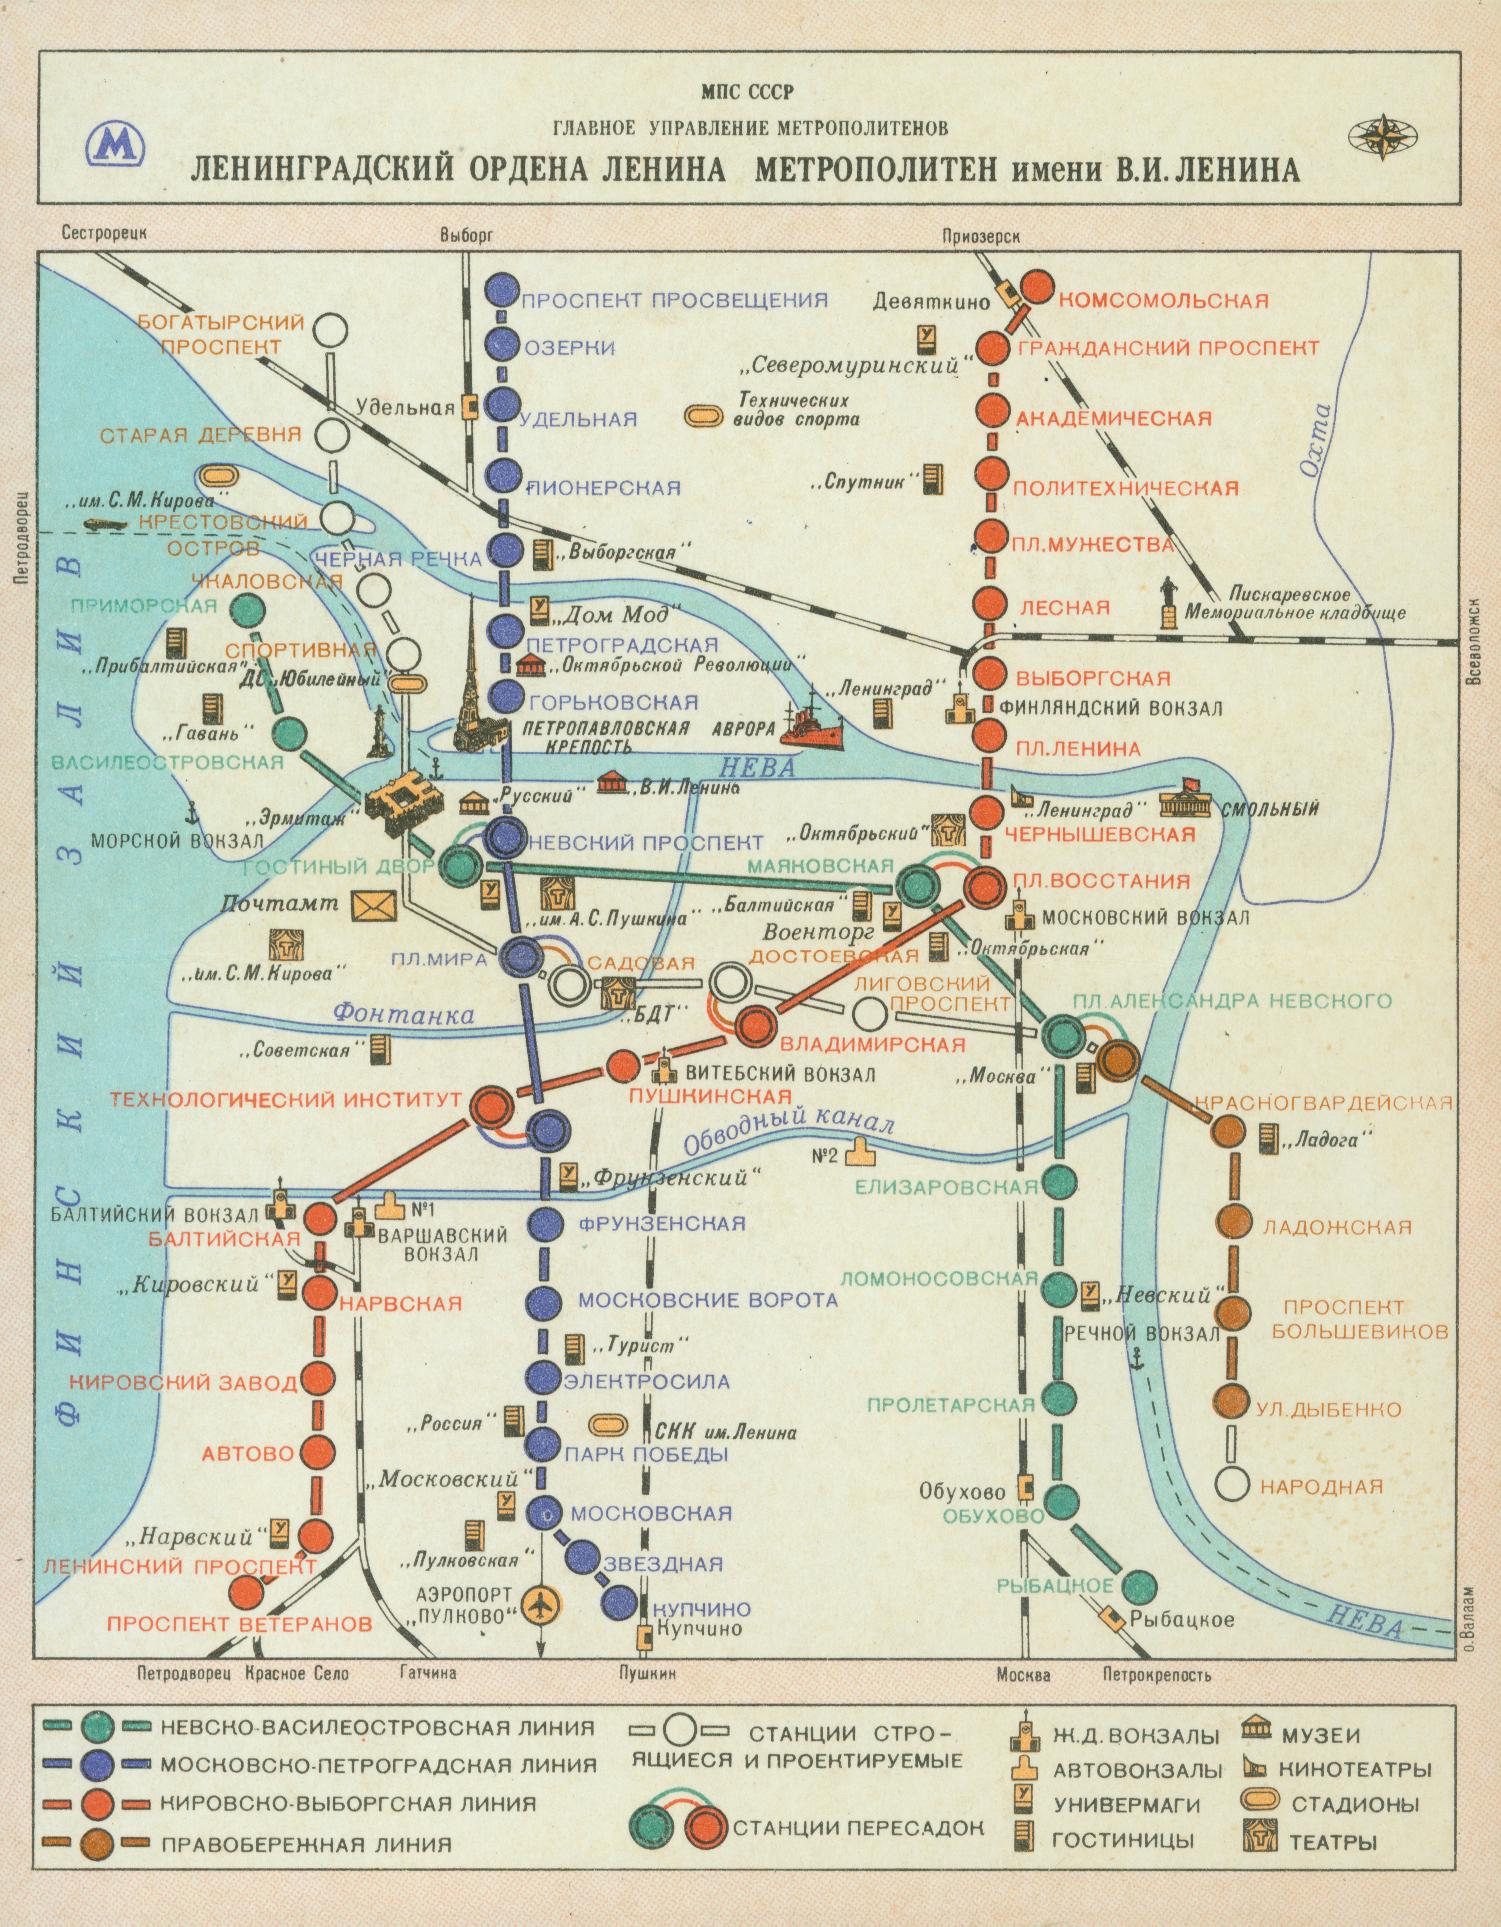 Pietari — Metro — Maps